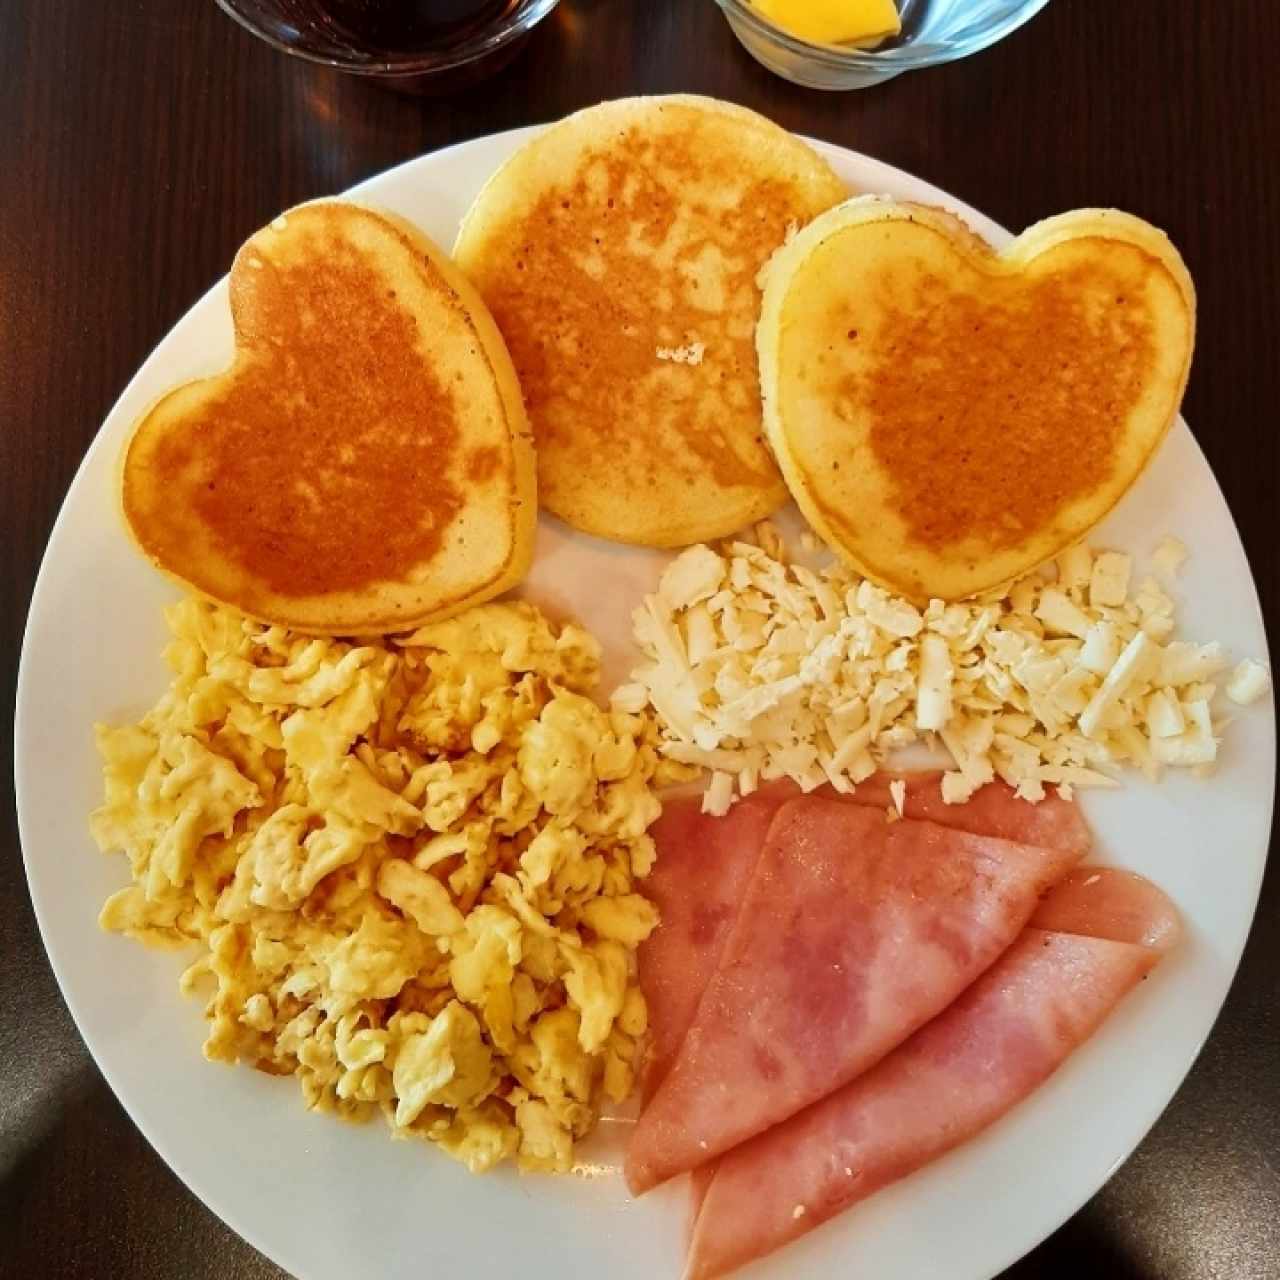 Desayuno - Americano